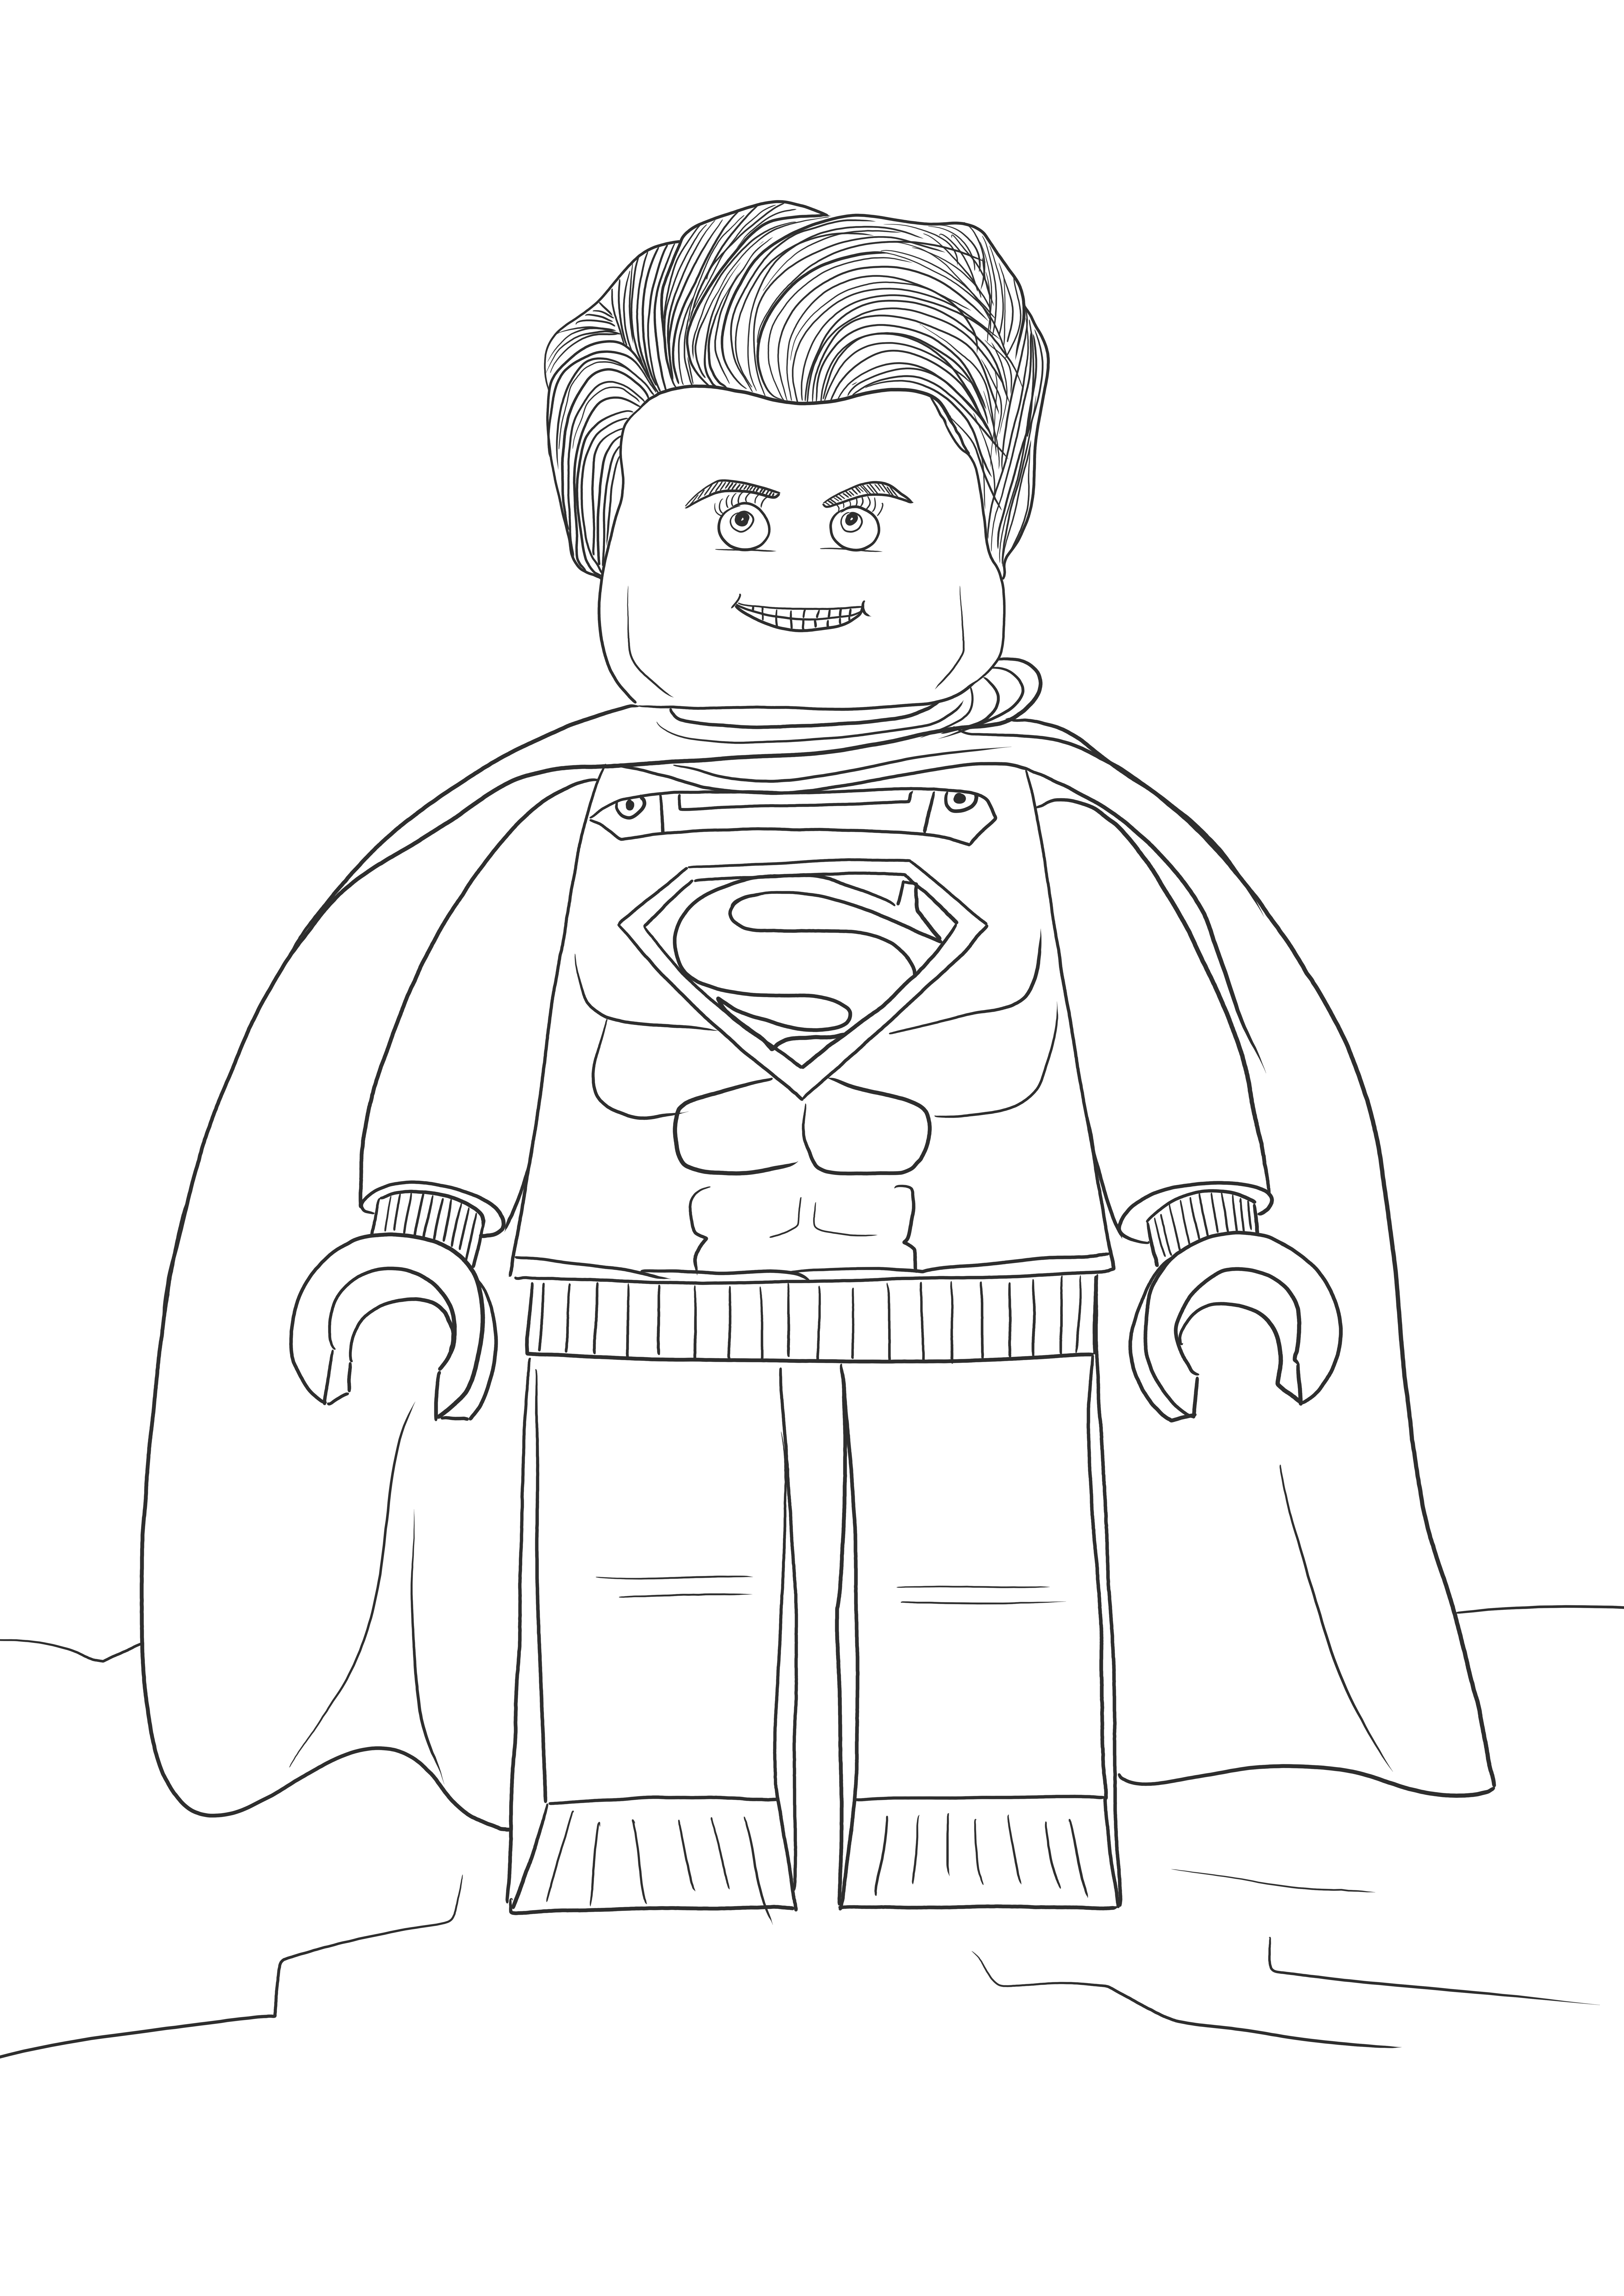 Lego Superman gratis untuk mencetak atau mengunduh gambar untuk diwarnai anak-anak